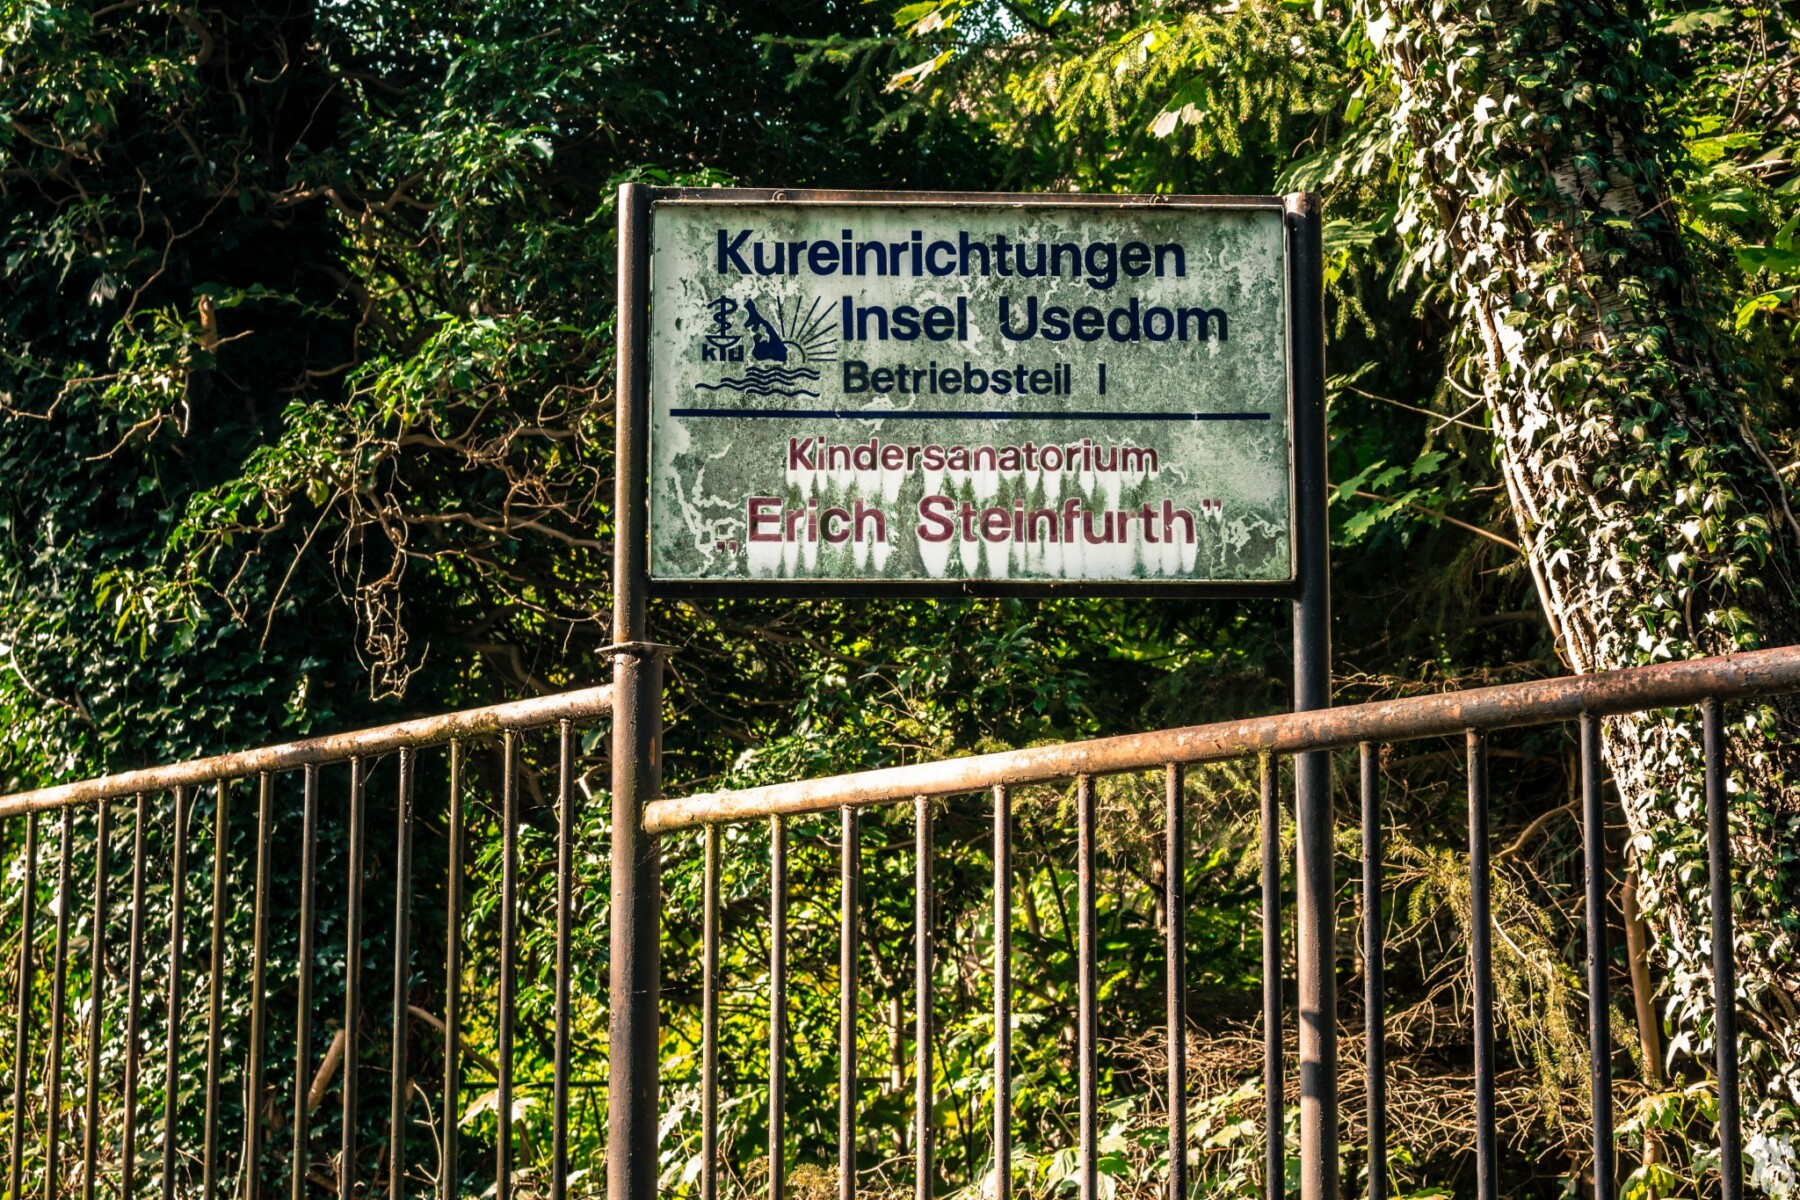 Sanatorium Erich Steinfurth